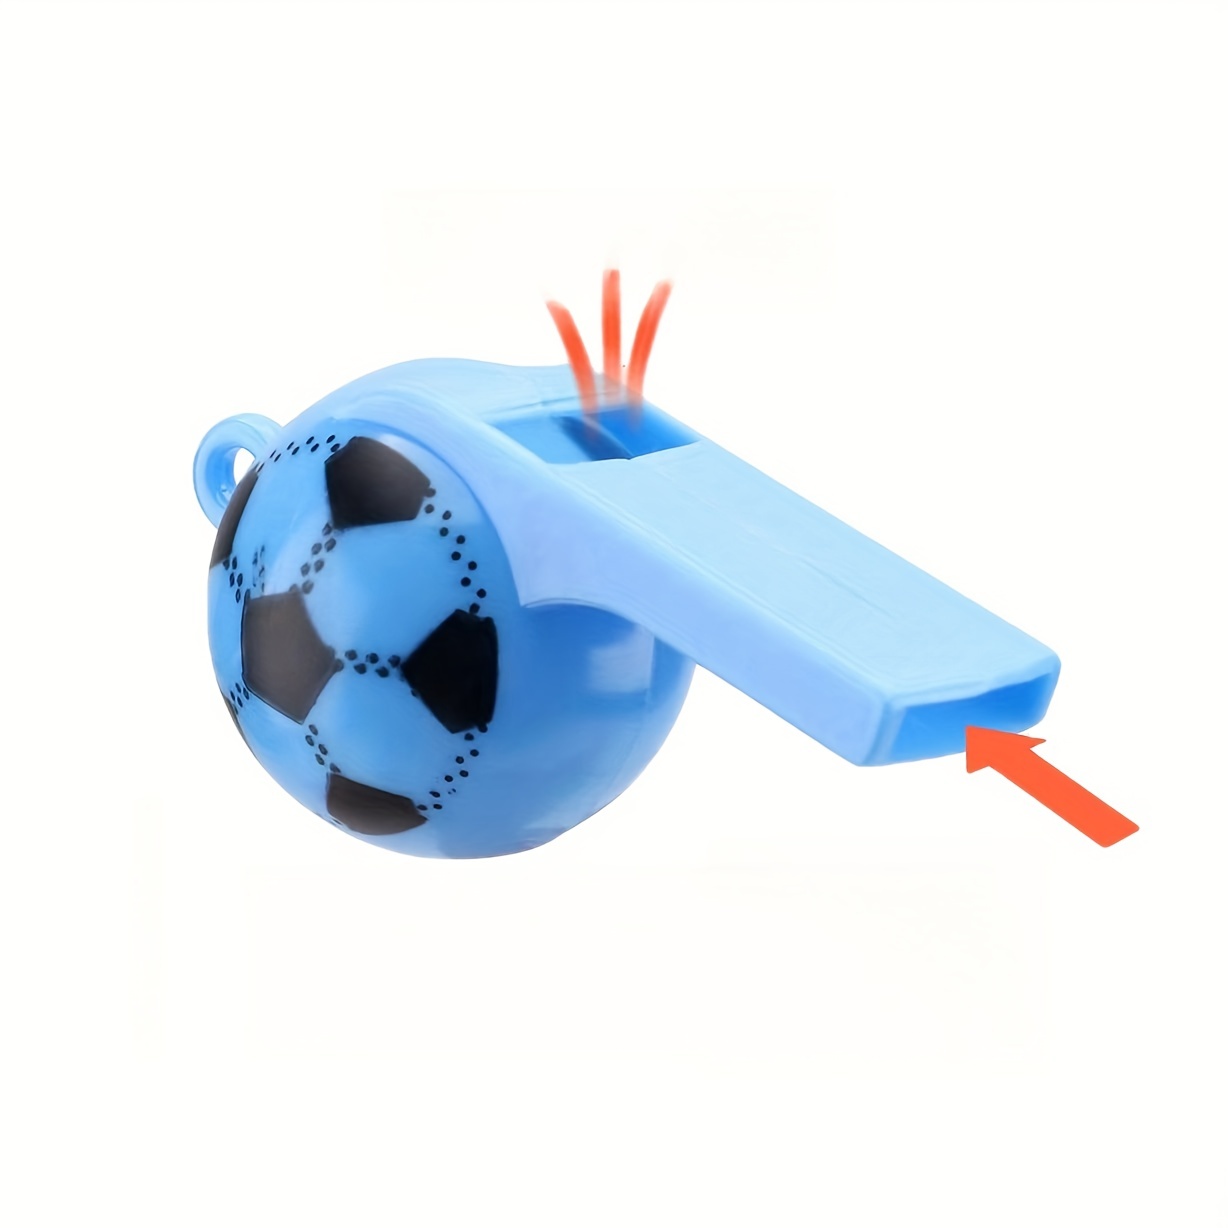 Solmar - Silbato de juguete de pvc para niños, diseño balón de fútbol, 5 x  3 cm, cuerda larga, partido fútbol infantil, arbitraj